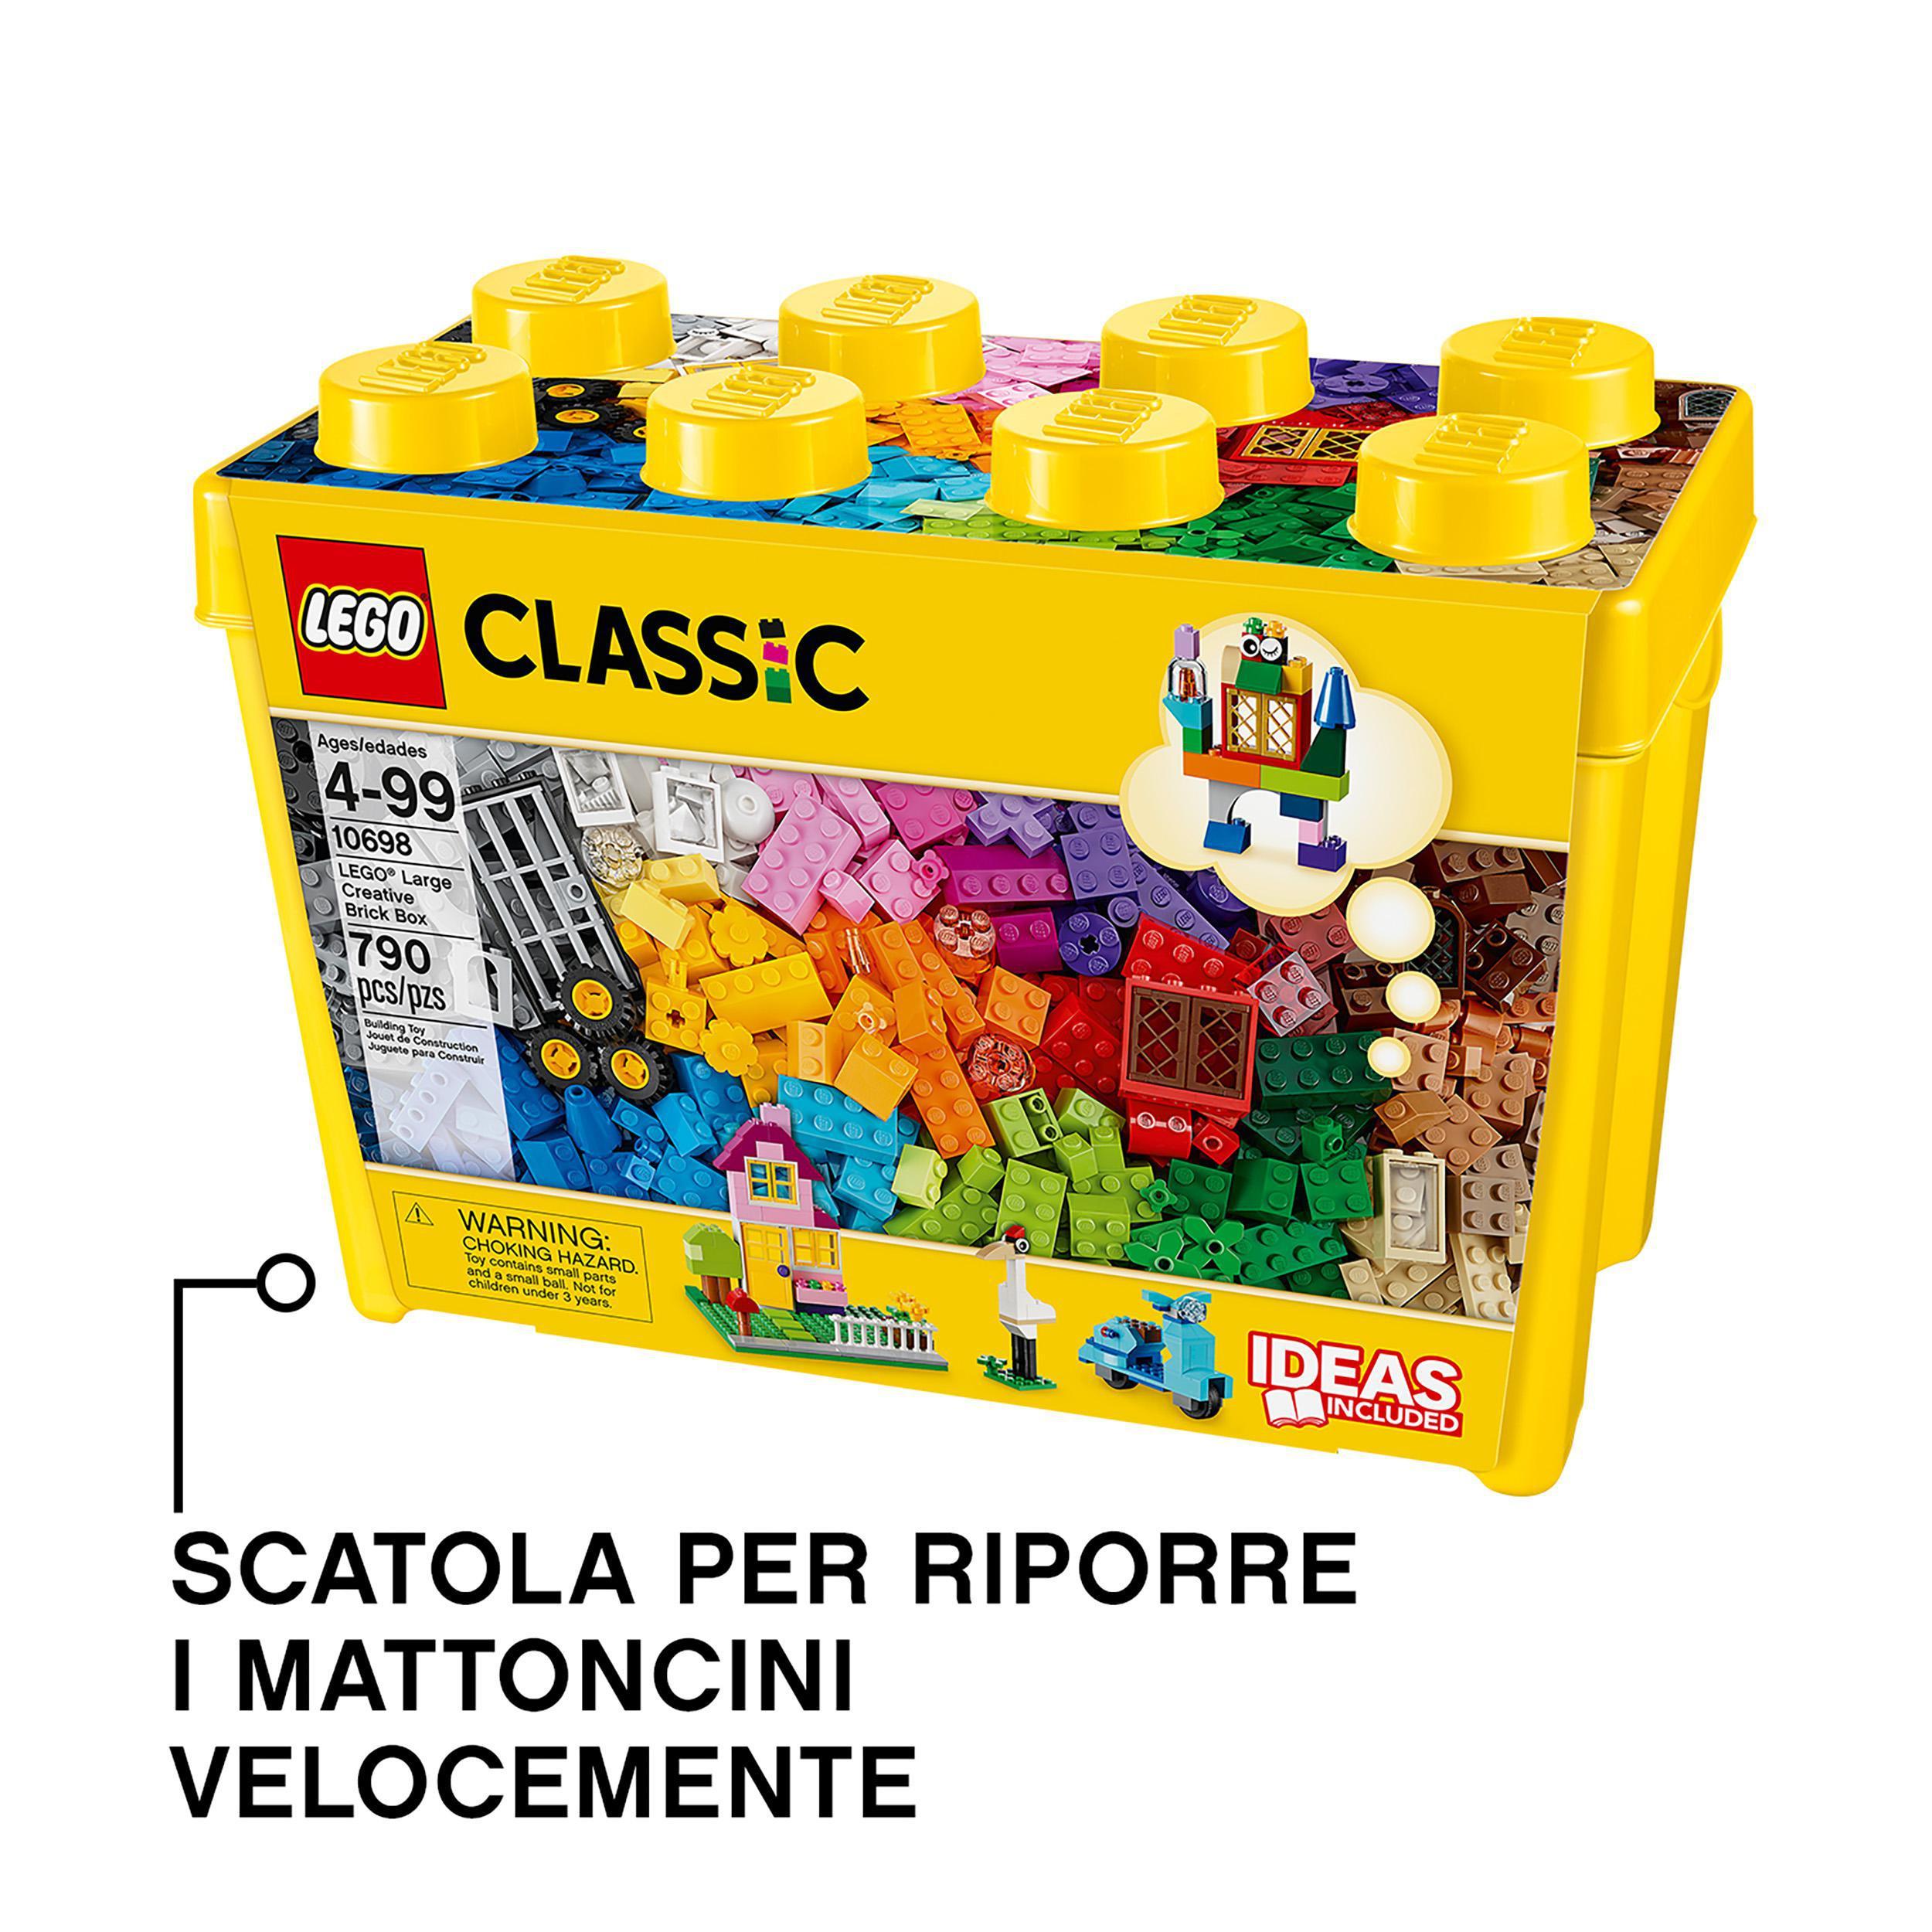 Lego classic 10698 scatola mattoncini creativi grande per costruire macchina fotografica, vespa e ruspa giocattolo - LEGO CLASSIC, Lego